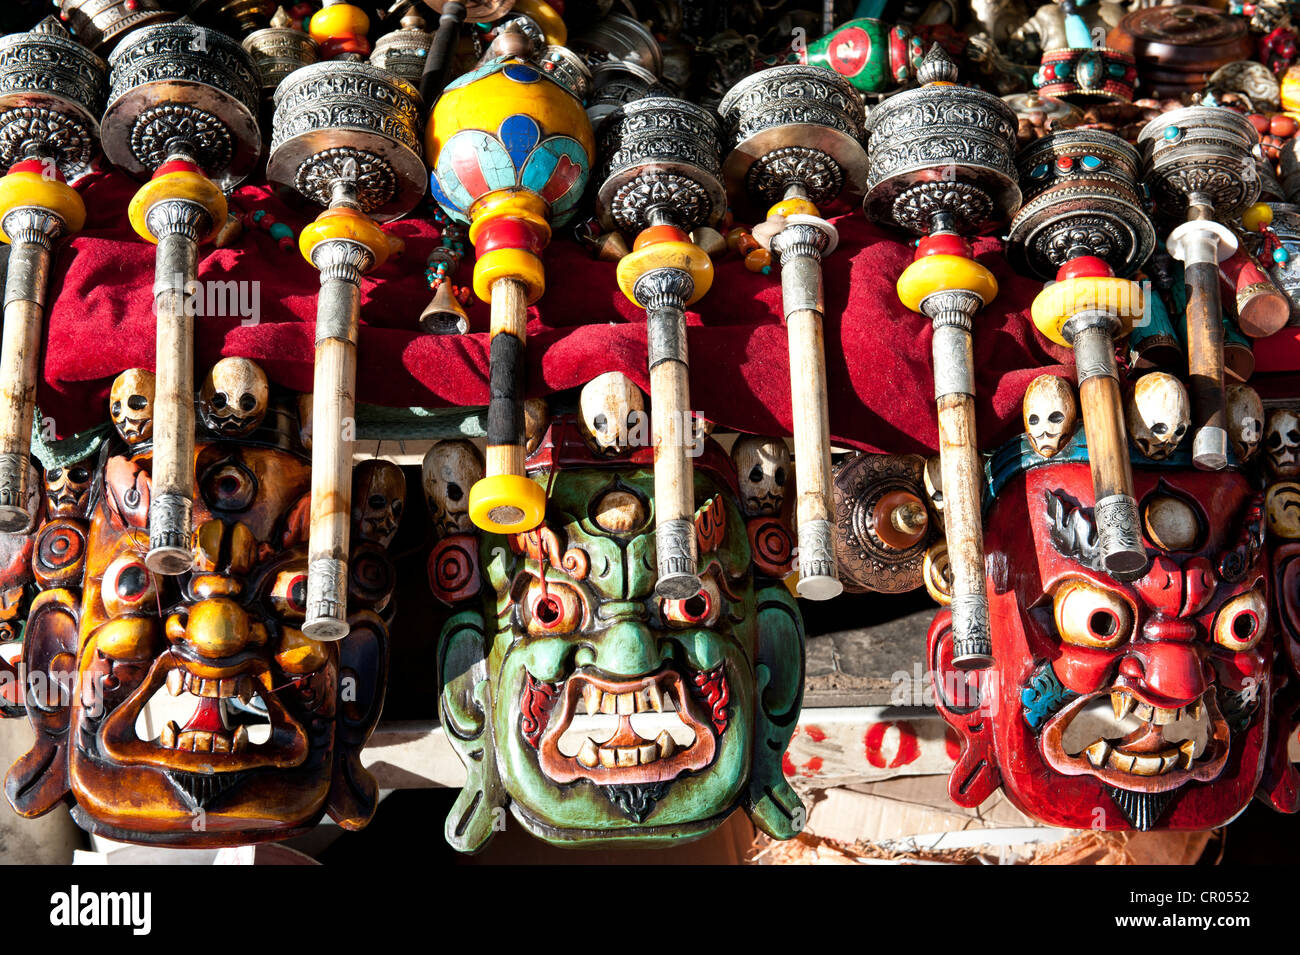 Le bouddhisme tibétain, les masques colorés, roues de prière tibétain, souvenirs, Lhassa, de l'Himalaya, le Tibet central, Ue-Tsang Banque D'Images